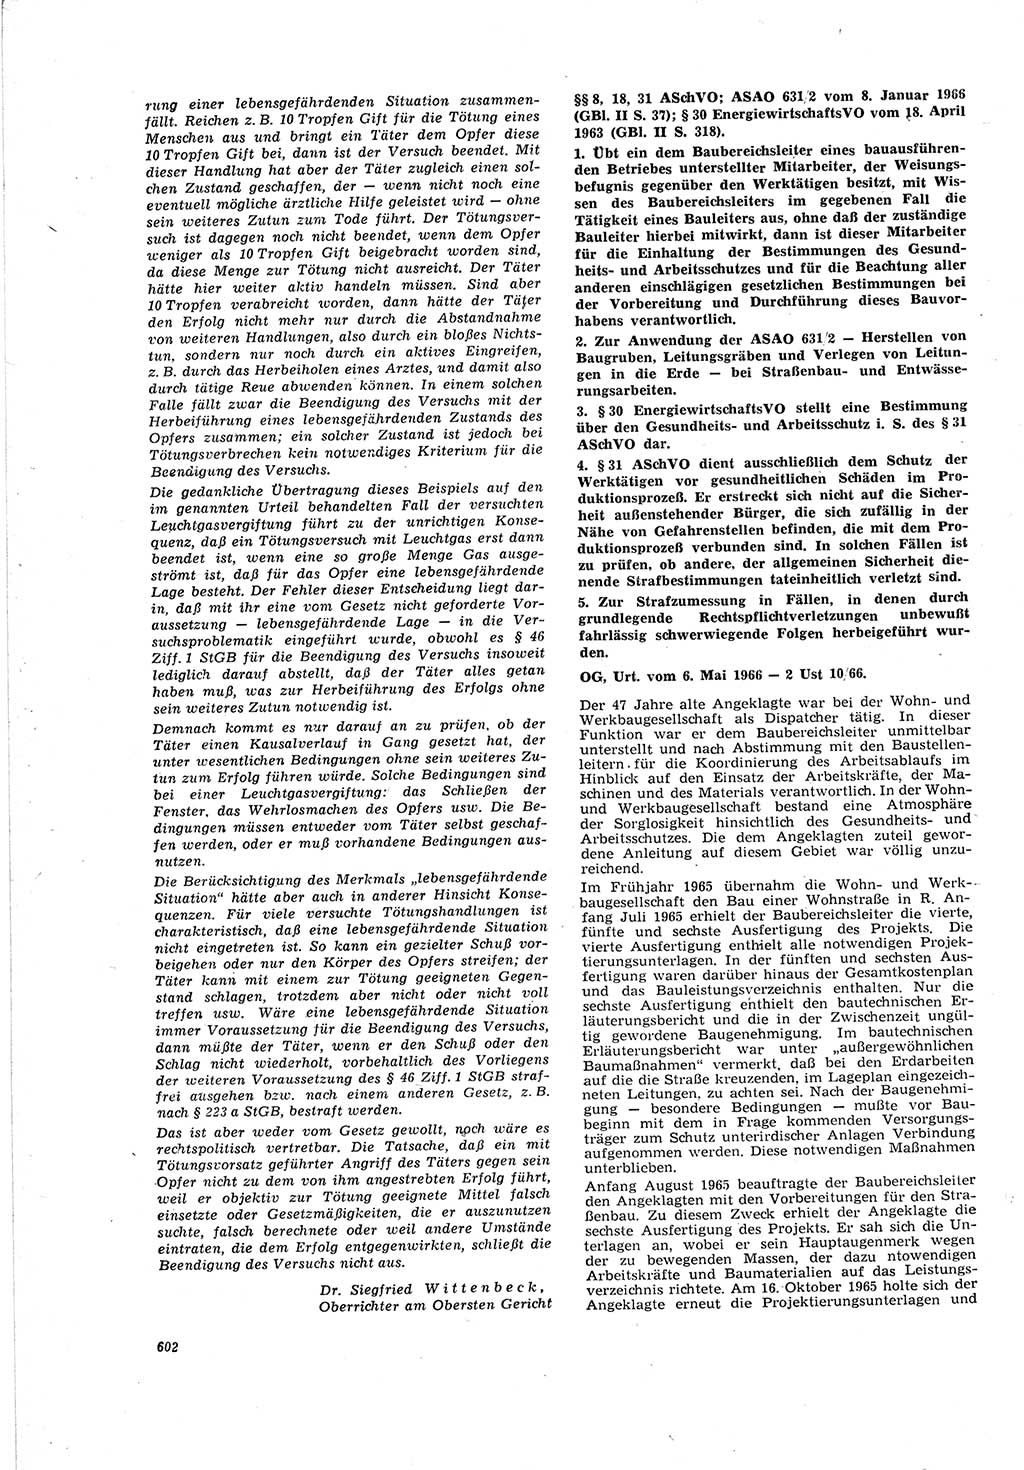 Neue Justiz (NJ), Zeitschrift für Recht und Rechtswissenschaft [Deutsche Demokratische Republik (DDR)], 20. Jahrgang 1966, Seite 602 (NJ DDR 1966, S. 602)